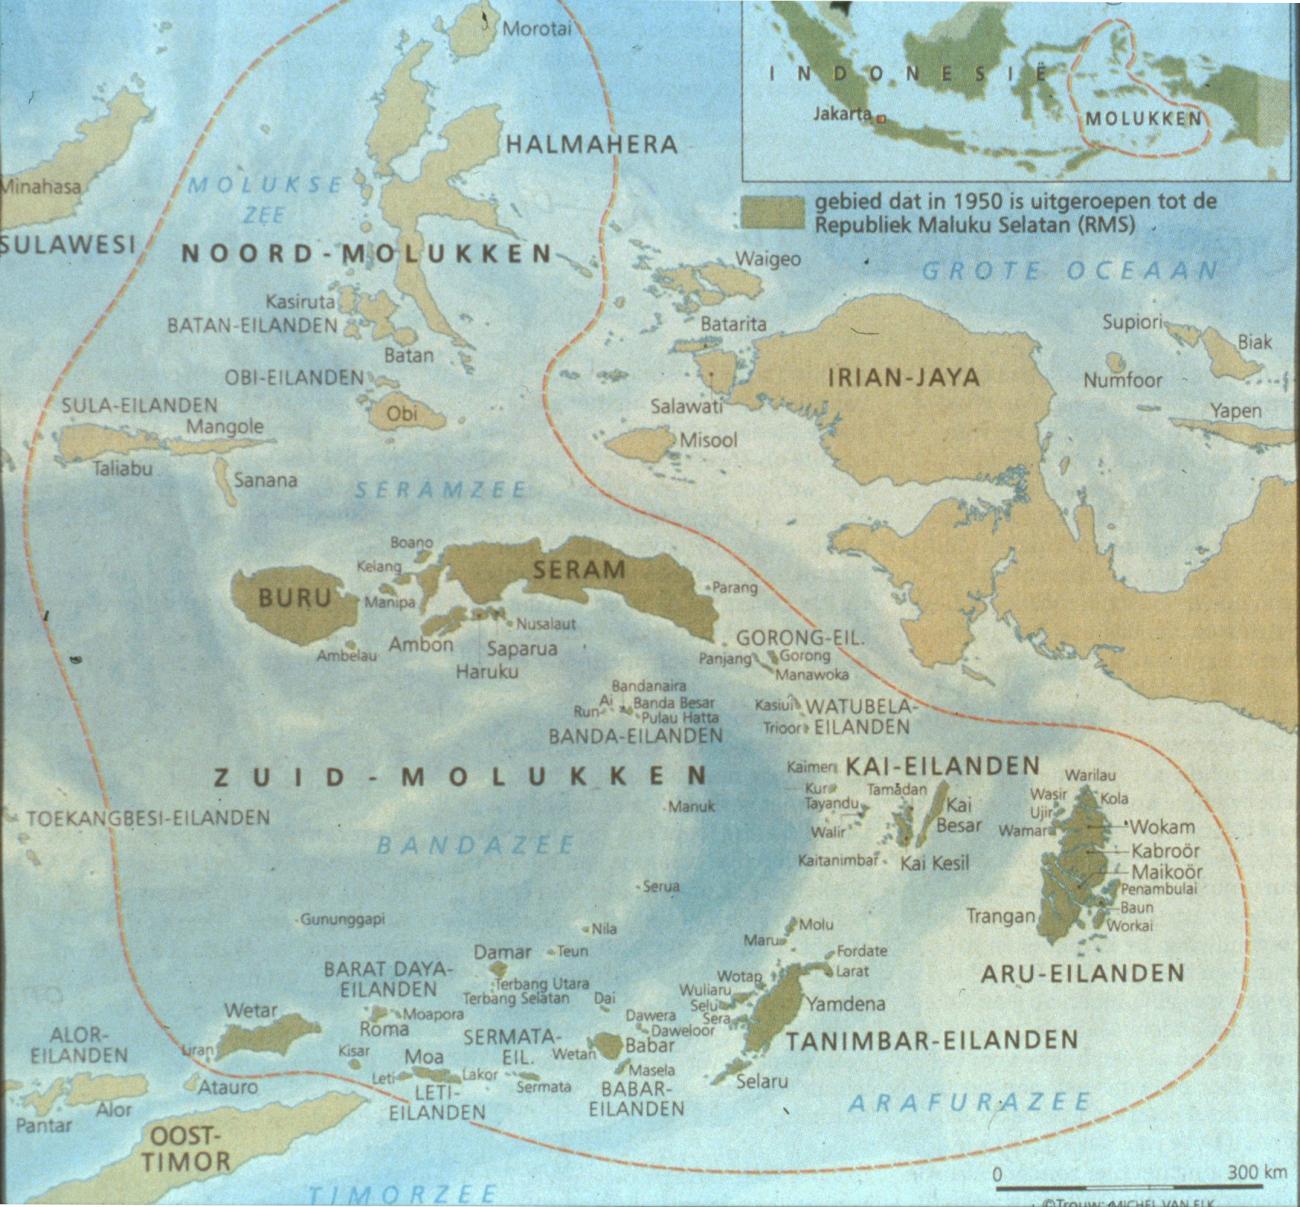 BD/67/149 - 
Overzichtskaart van de republiek der Vrije Molukken
